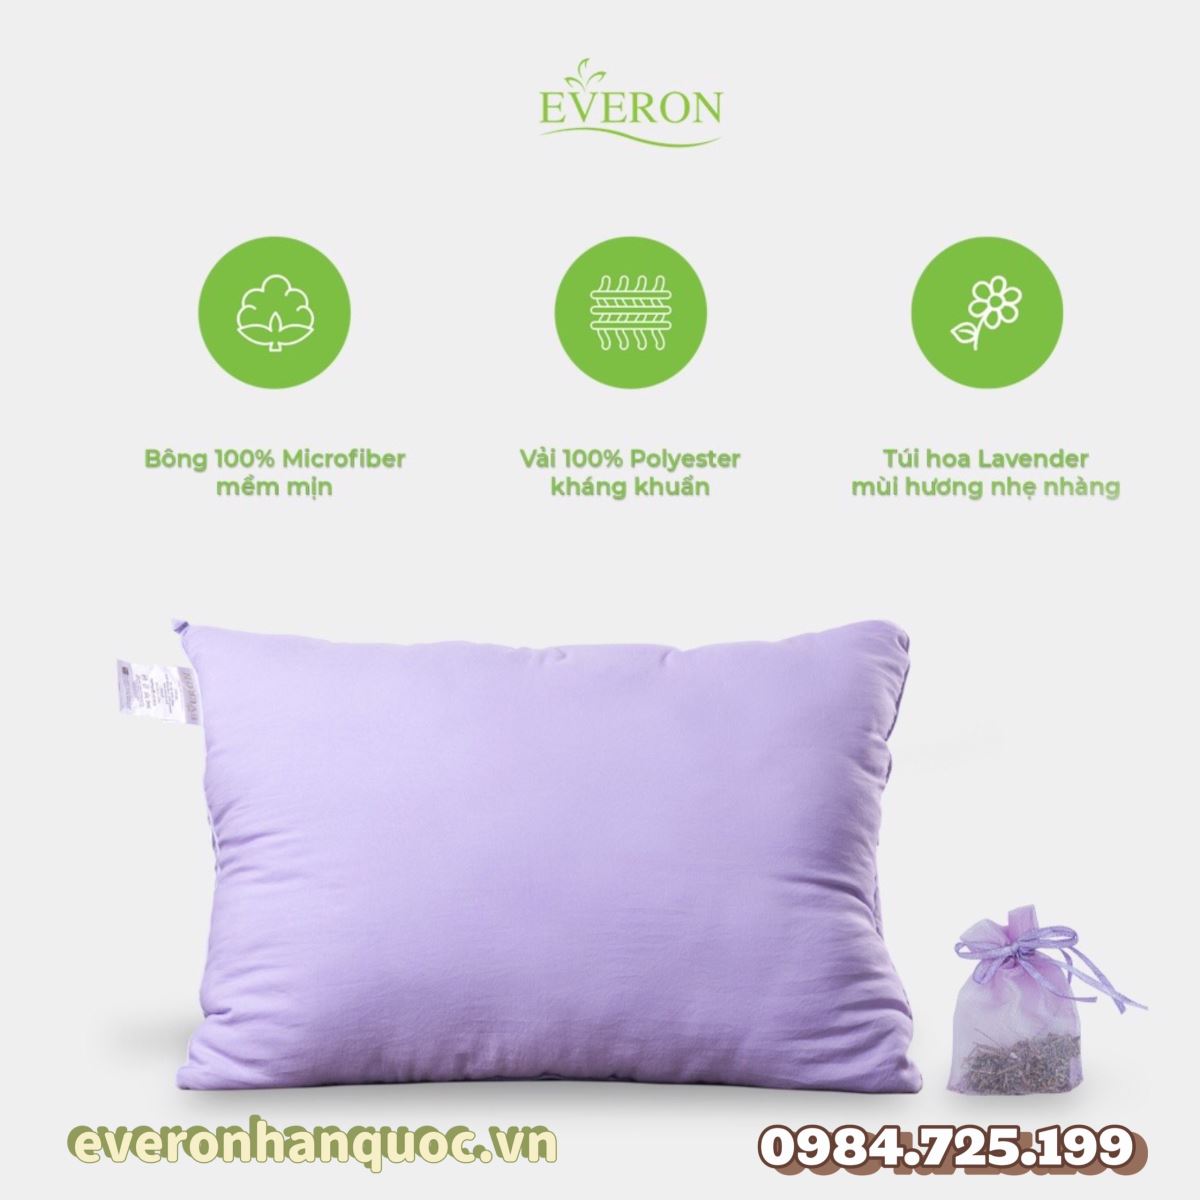 Ruột gối Everon Lavender 2.0